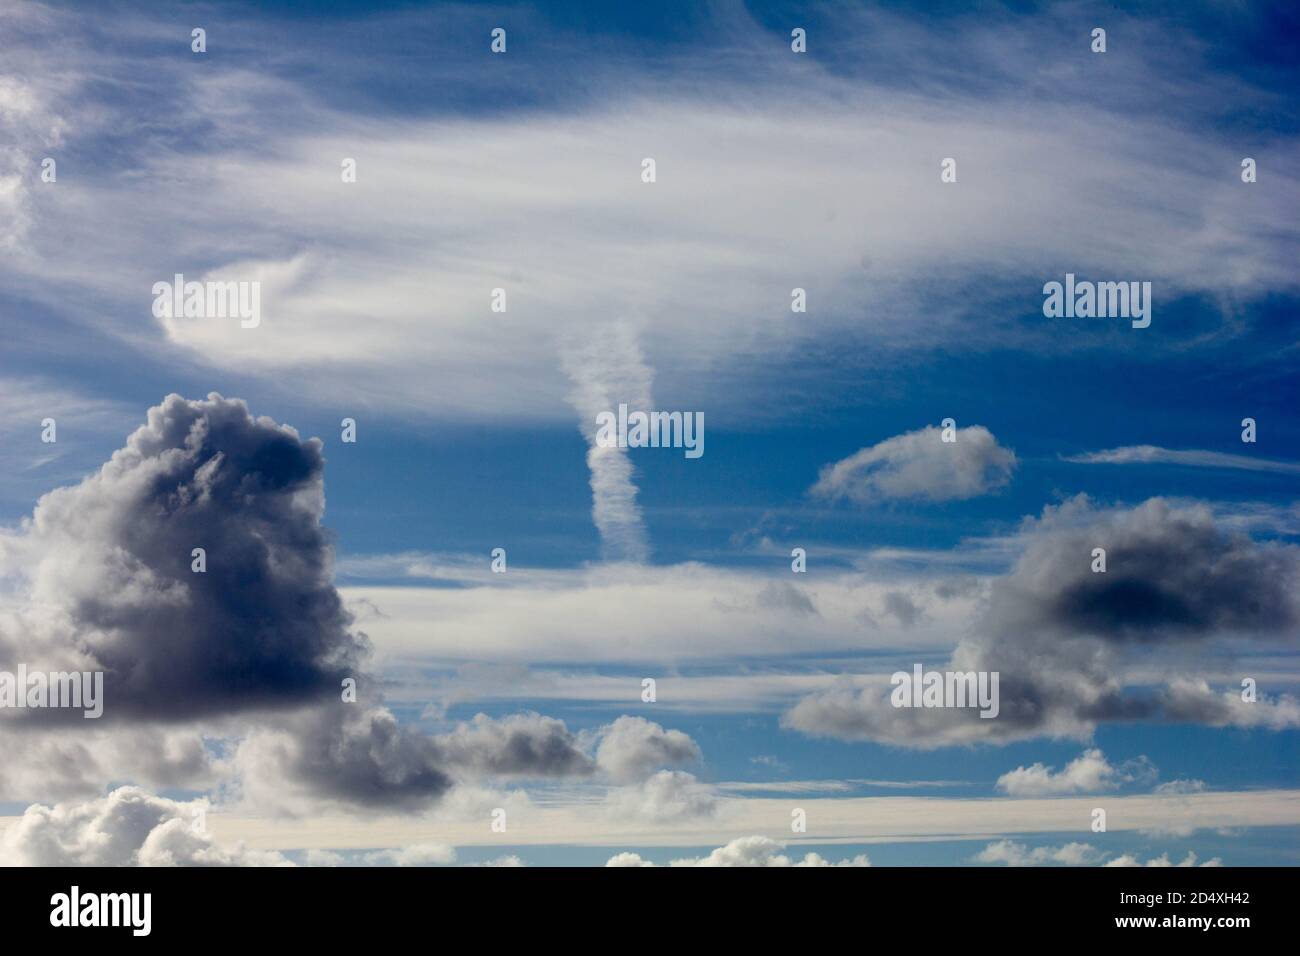 Natürliche Wolkenbildung, die einer nuklearen Explosion ähnelt Stockfoto